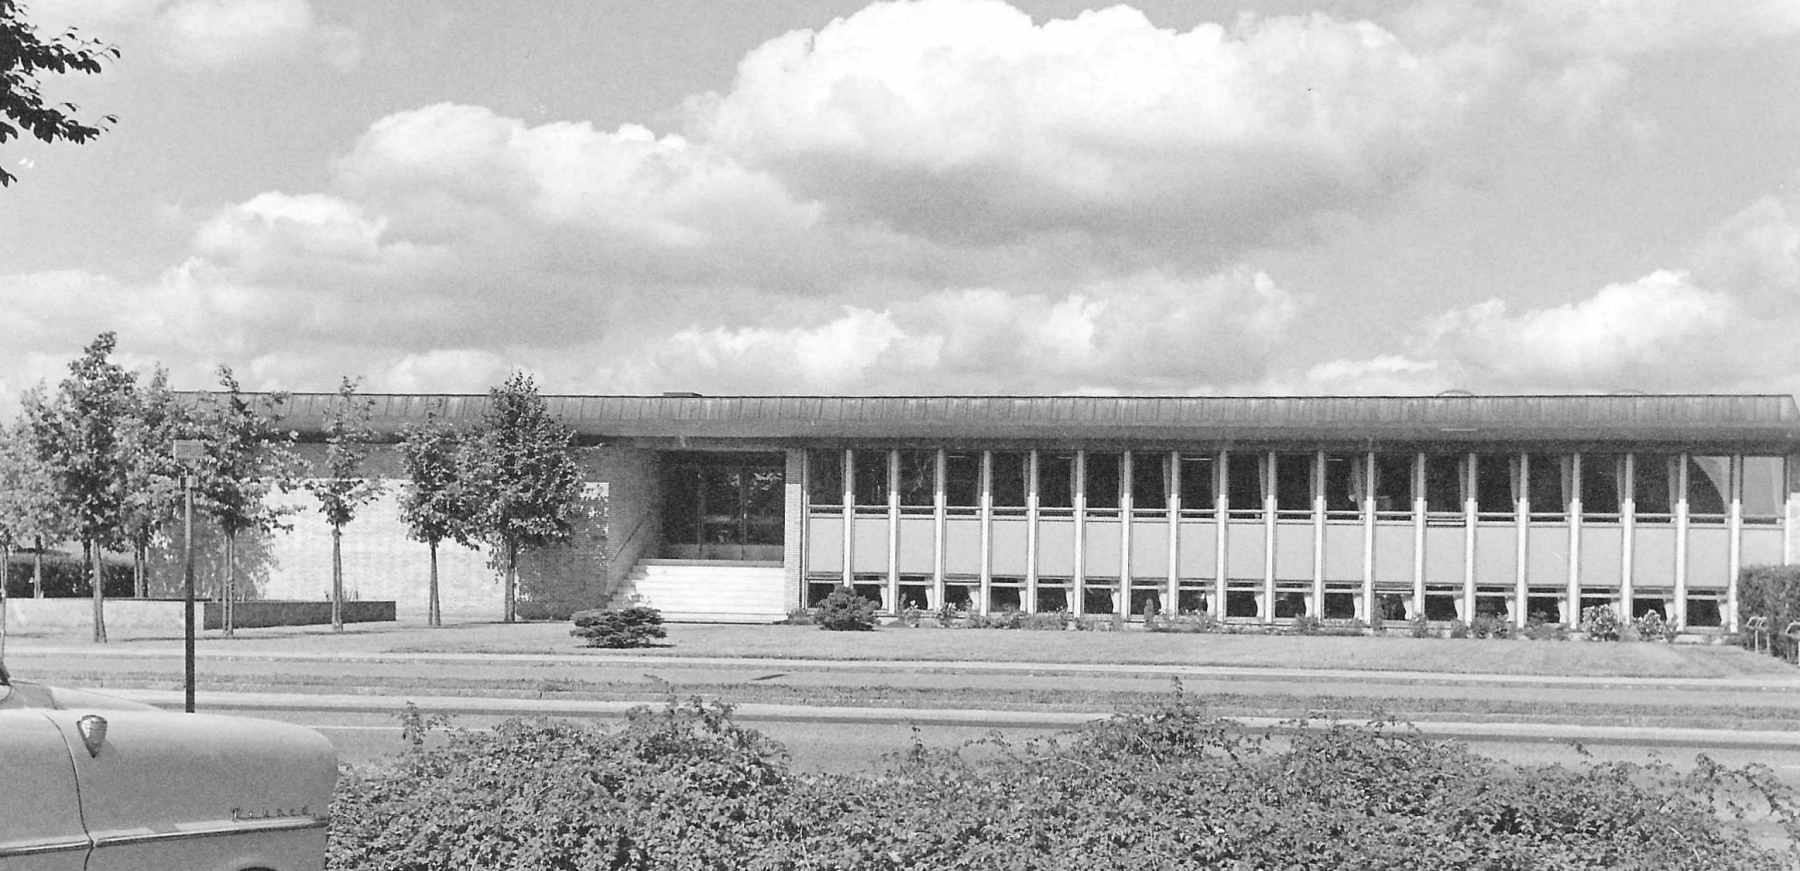 1966. Radiotekniker Tage Pluzek, der var en ivrig og dygtig amatørfotograf, tog dette foto af det forholdvis nye Store Magleby rådhus. Foto: DB-Arkiv.